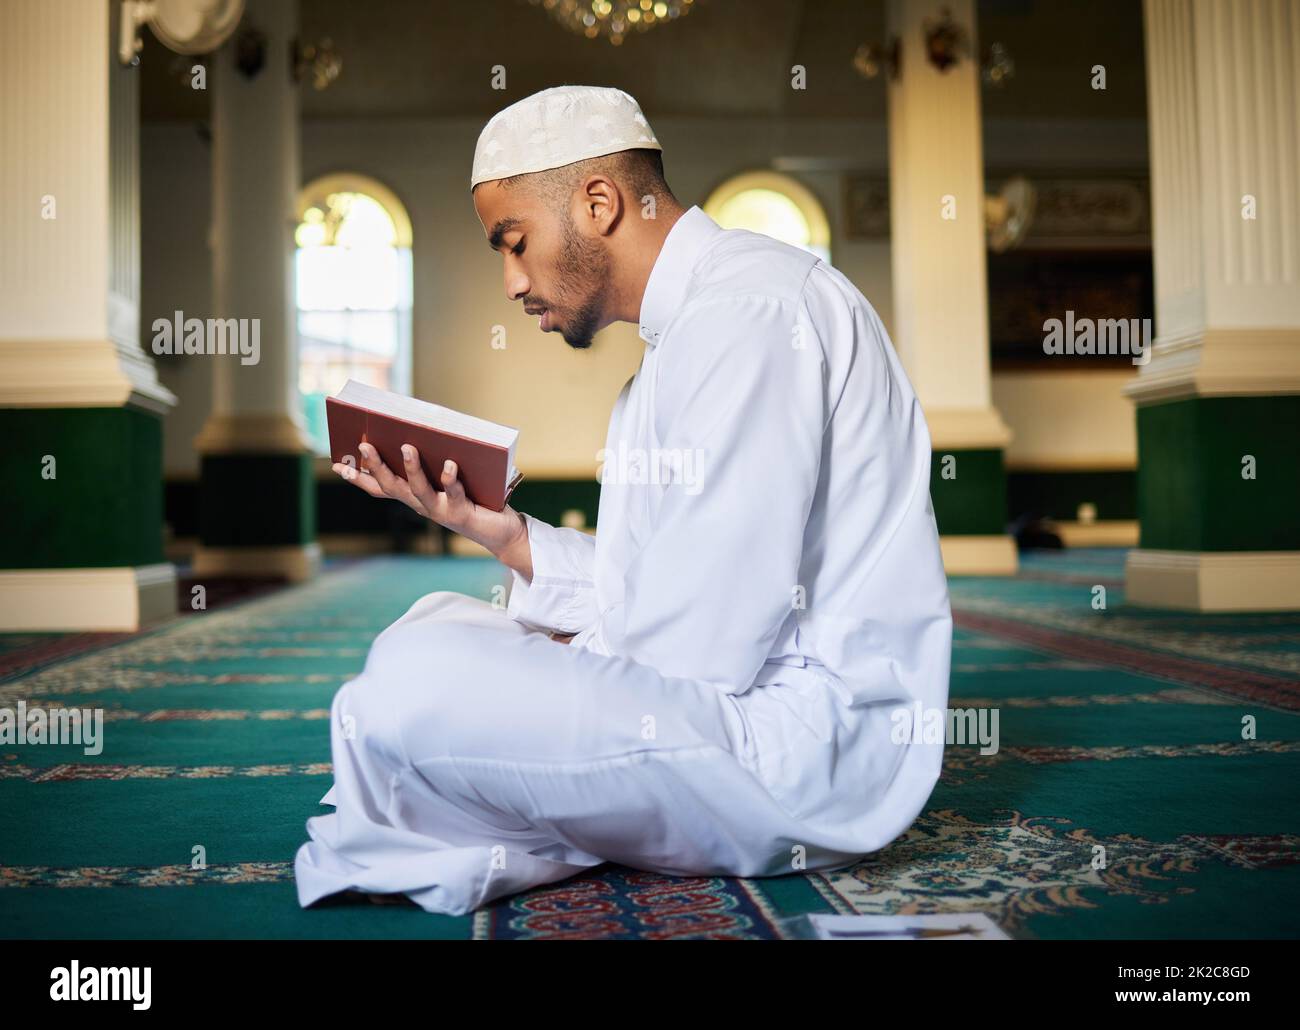 Non perdete la speranza, né siate tristi. Girato di un giovane maschio musulmano che legge le Scritture in una moschea. Foto Stock